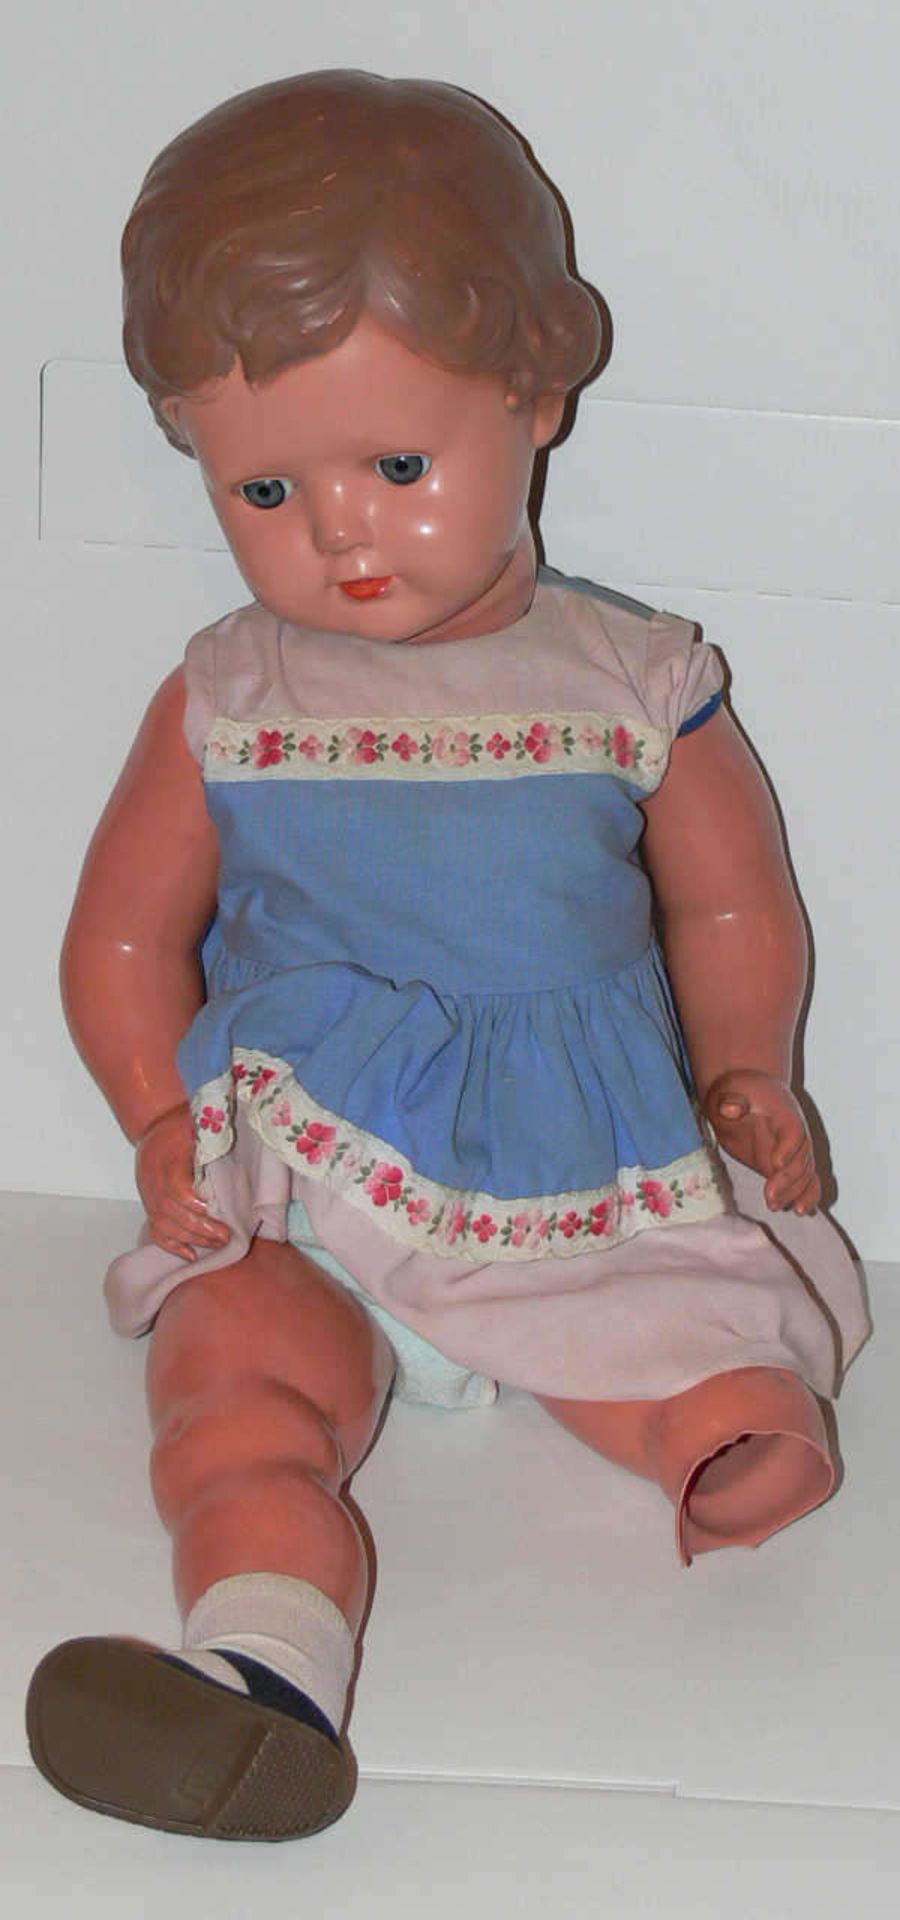 Lot Schildkröt - Puppen, bestehend aus Ursel 64, ein Bein defekt, alte Bärbel 45 mit Metallfeder, - Bild 2 aus 2